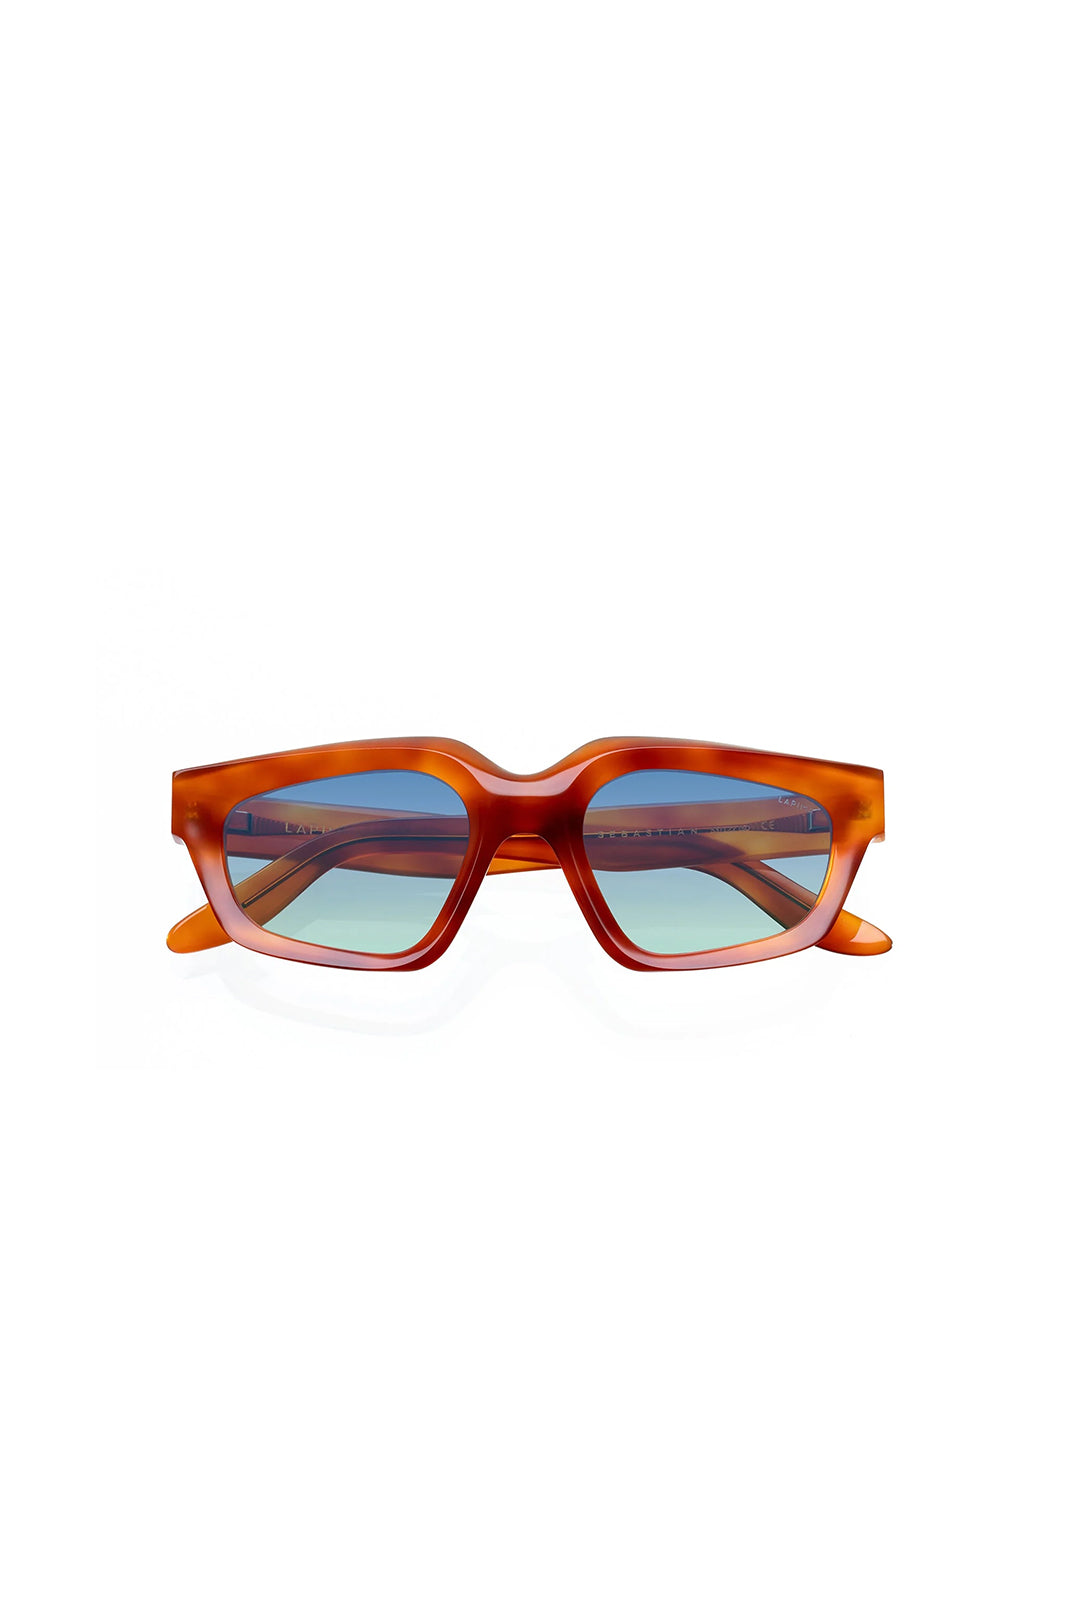 Sebastian Caramel Sunglasses